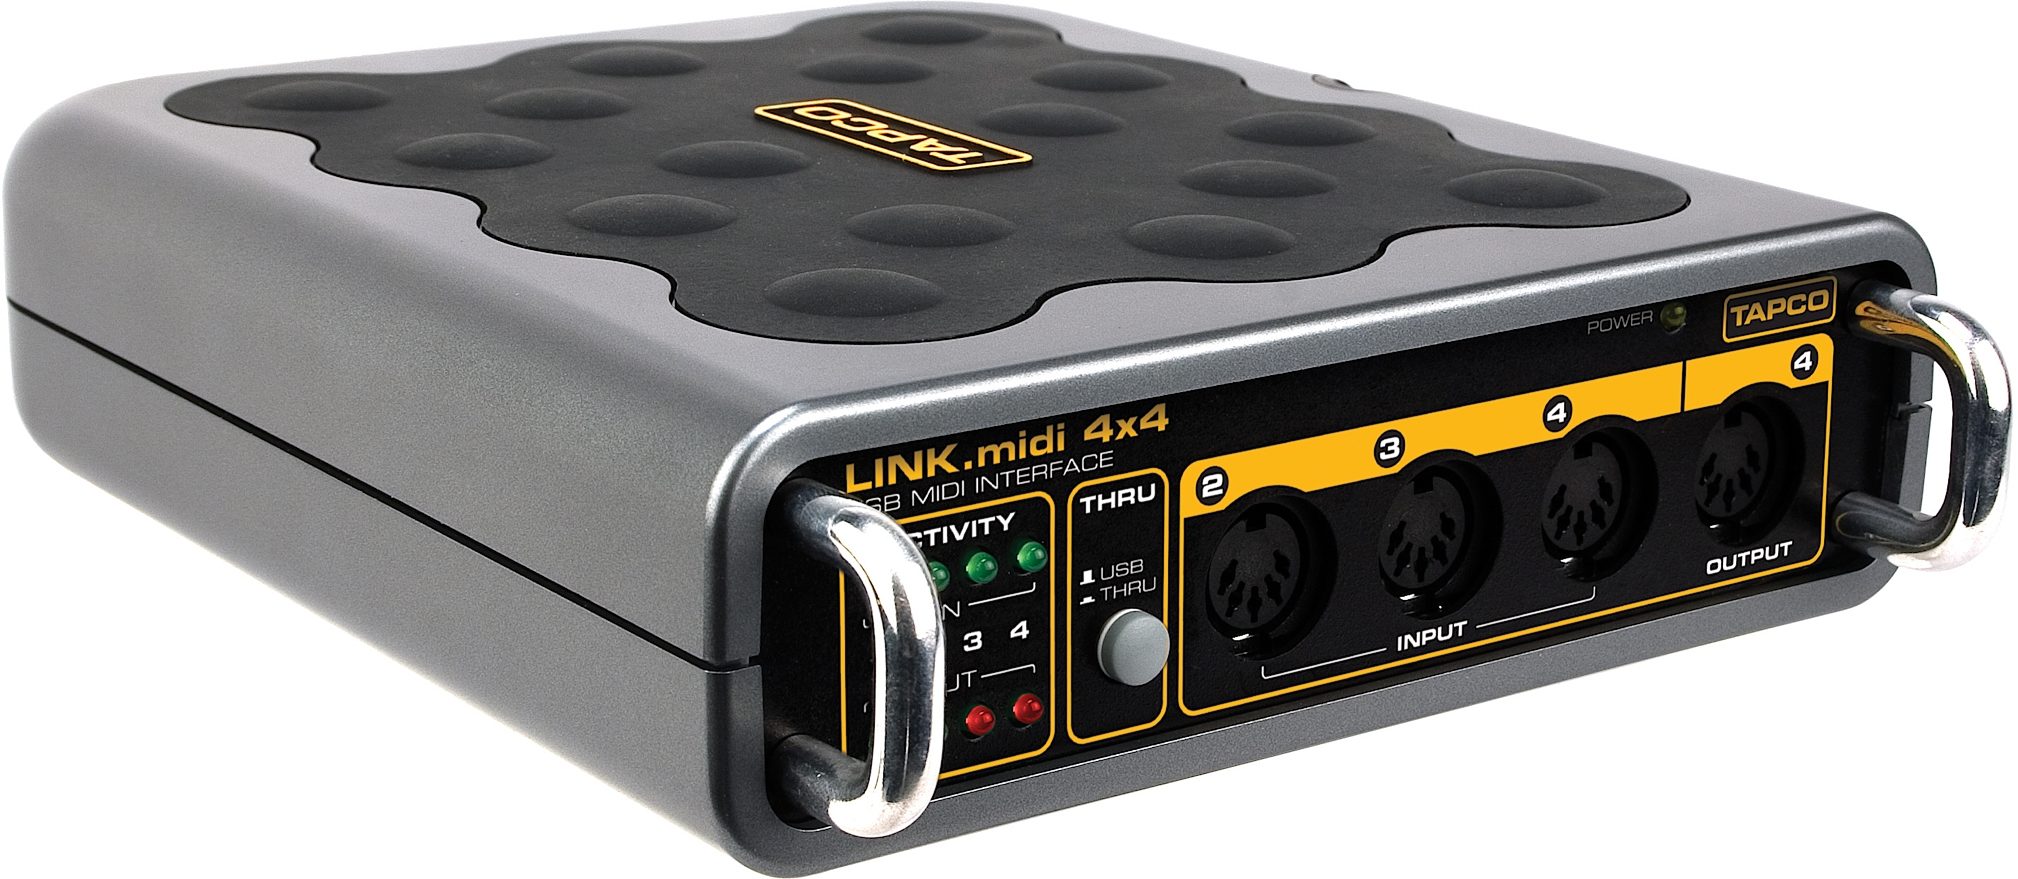 MIDI 4x4 USB MIDI interface